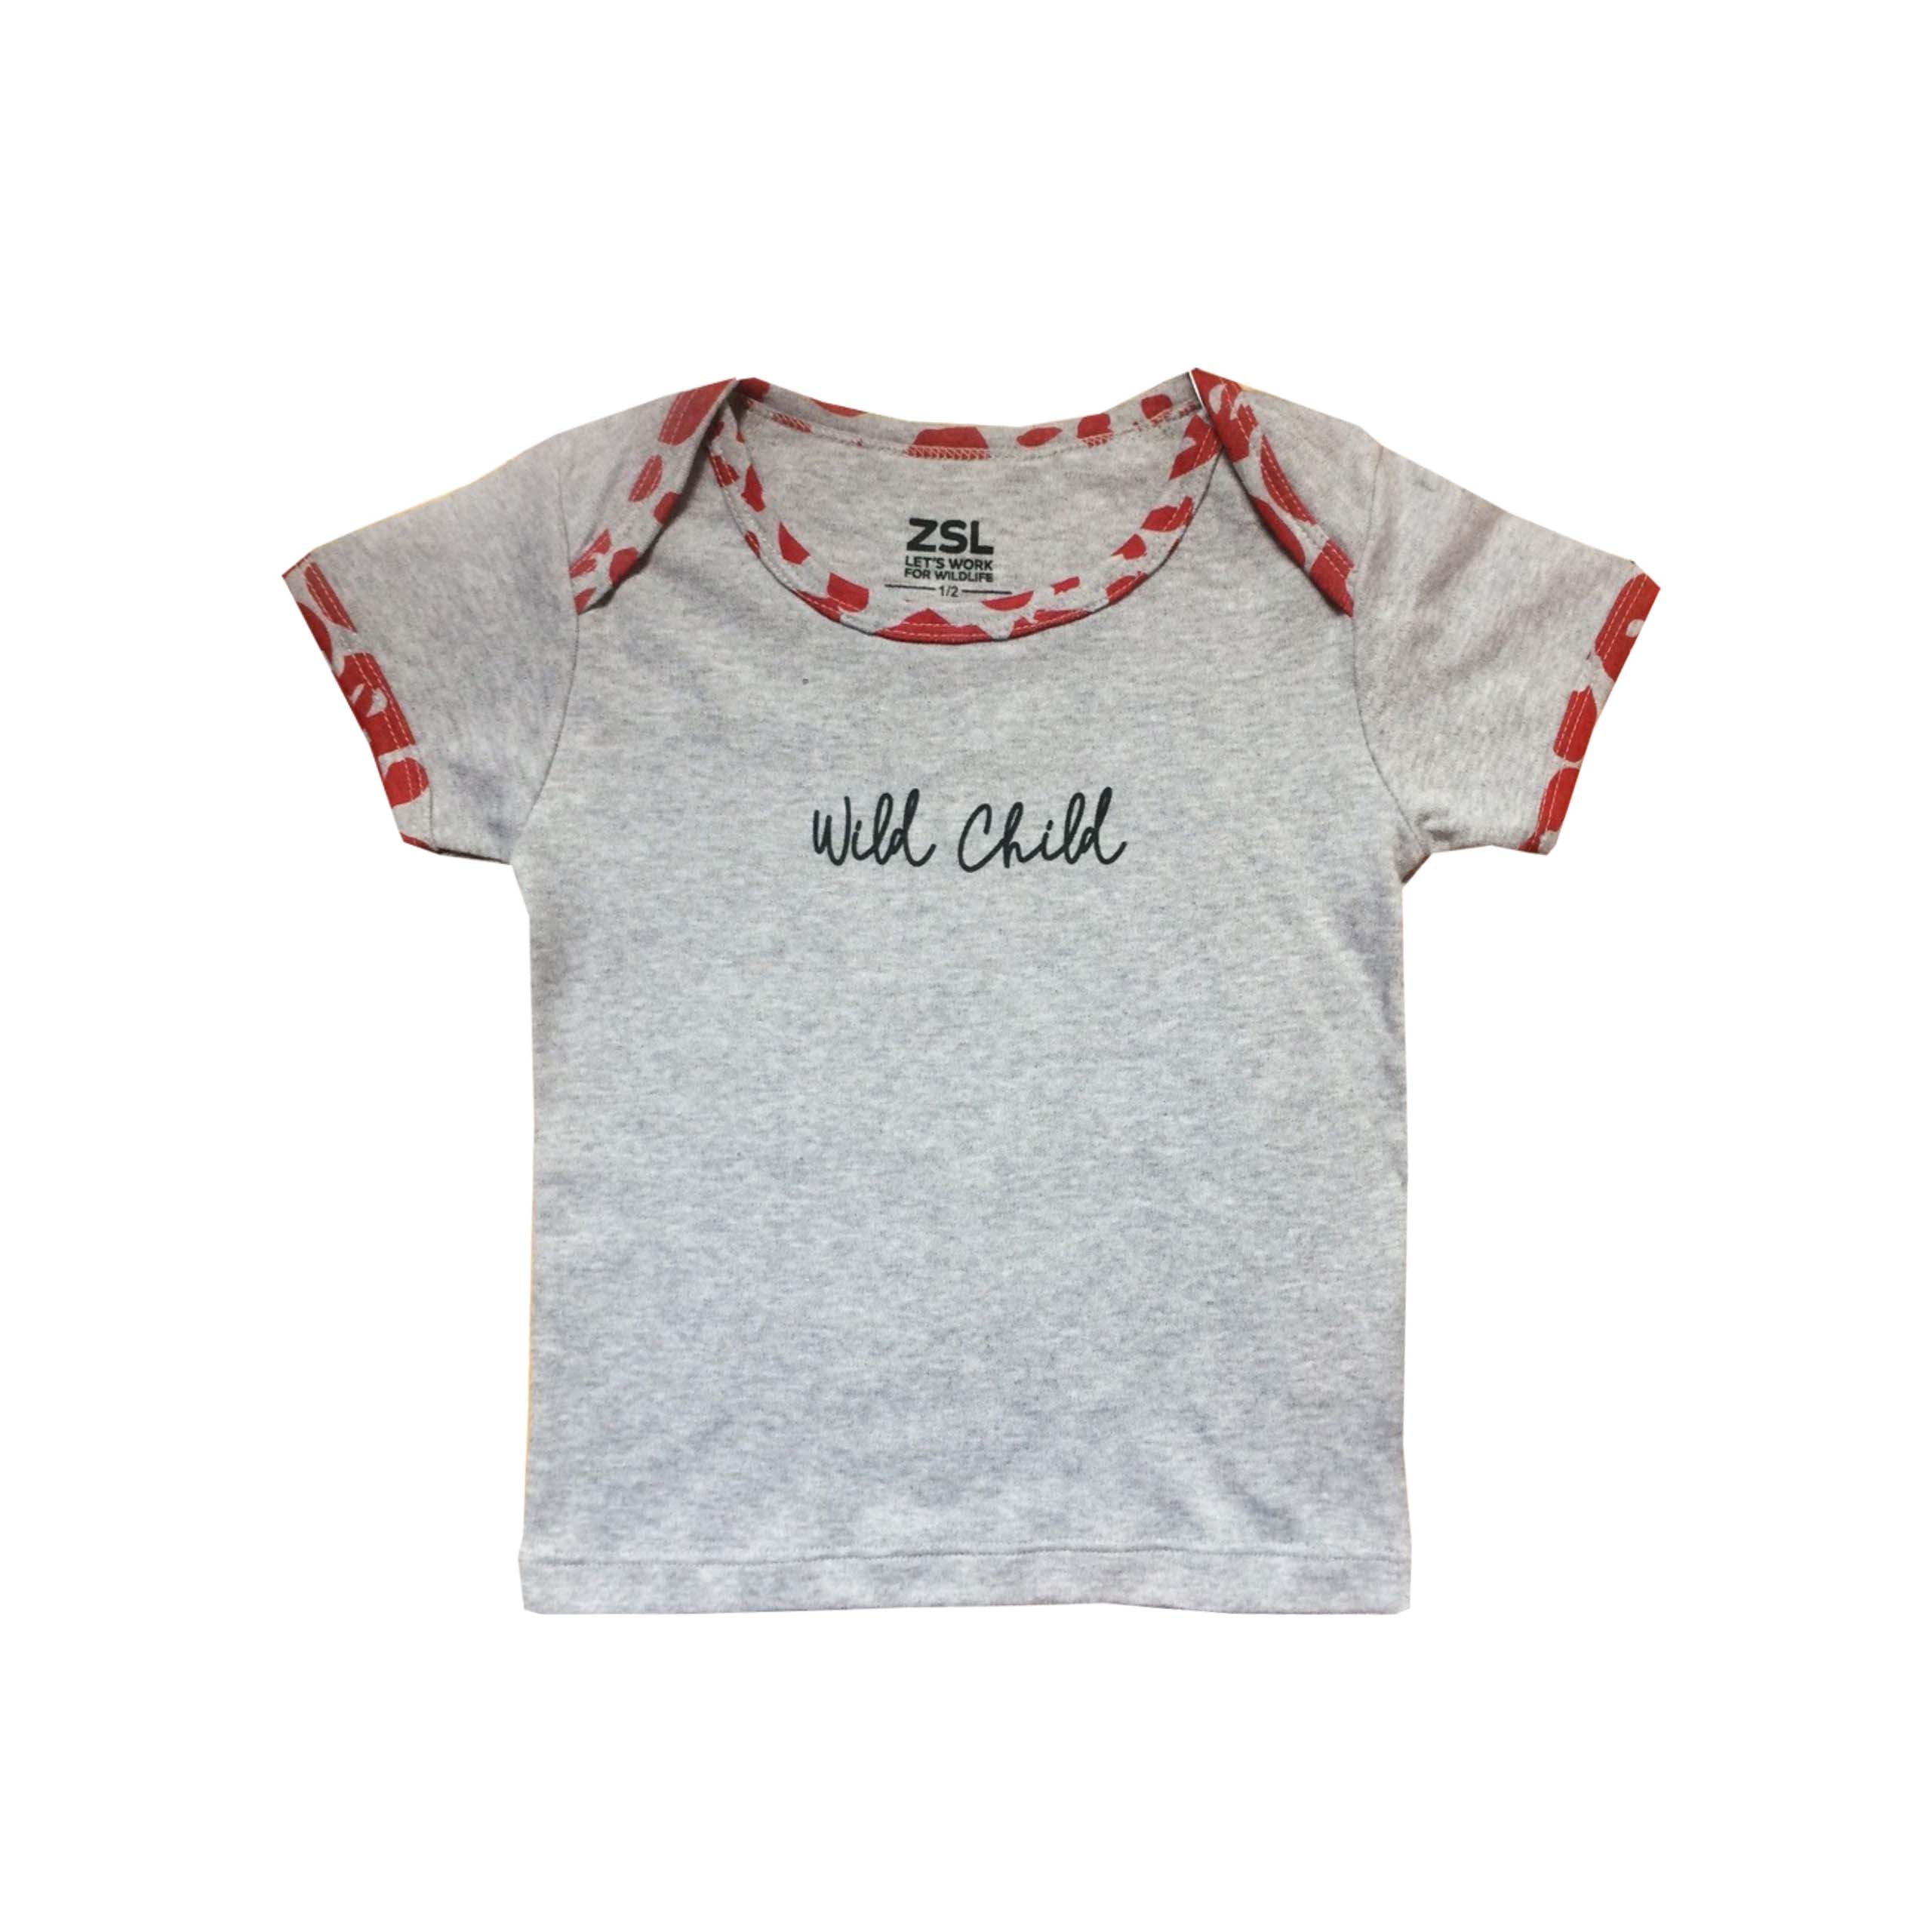 Wild Child Baby T-shirt, 3-6 Months